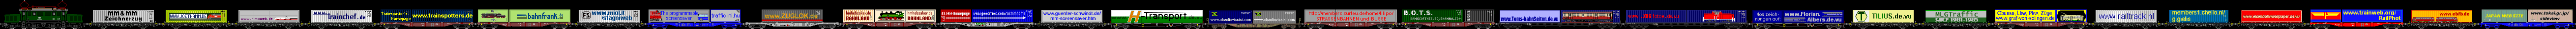 MM&MM Bildschirmschoner Zeichnerzug. Wenn Sie auch hier aufgenommen werden möchten, senden Sie bitte einfach eine Zeichnung Ihres Containers an pierre@trainspotters.de